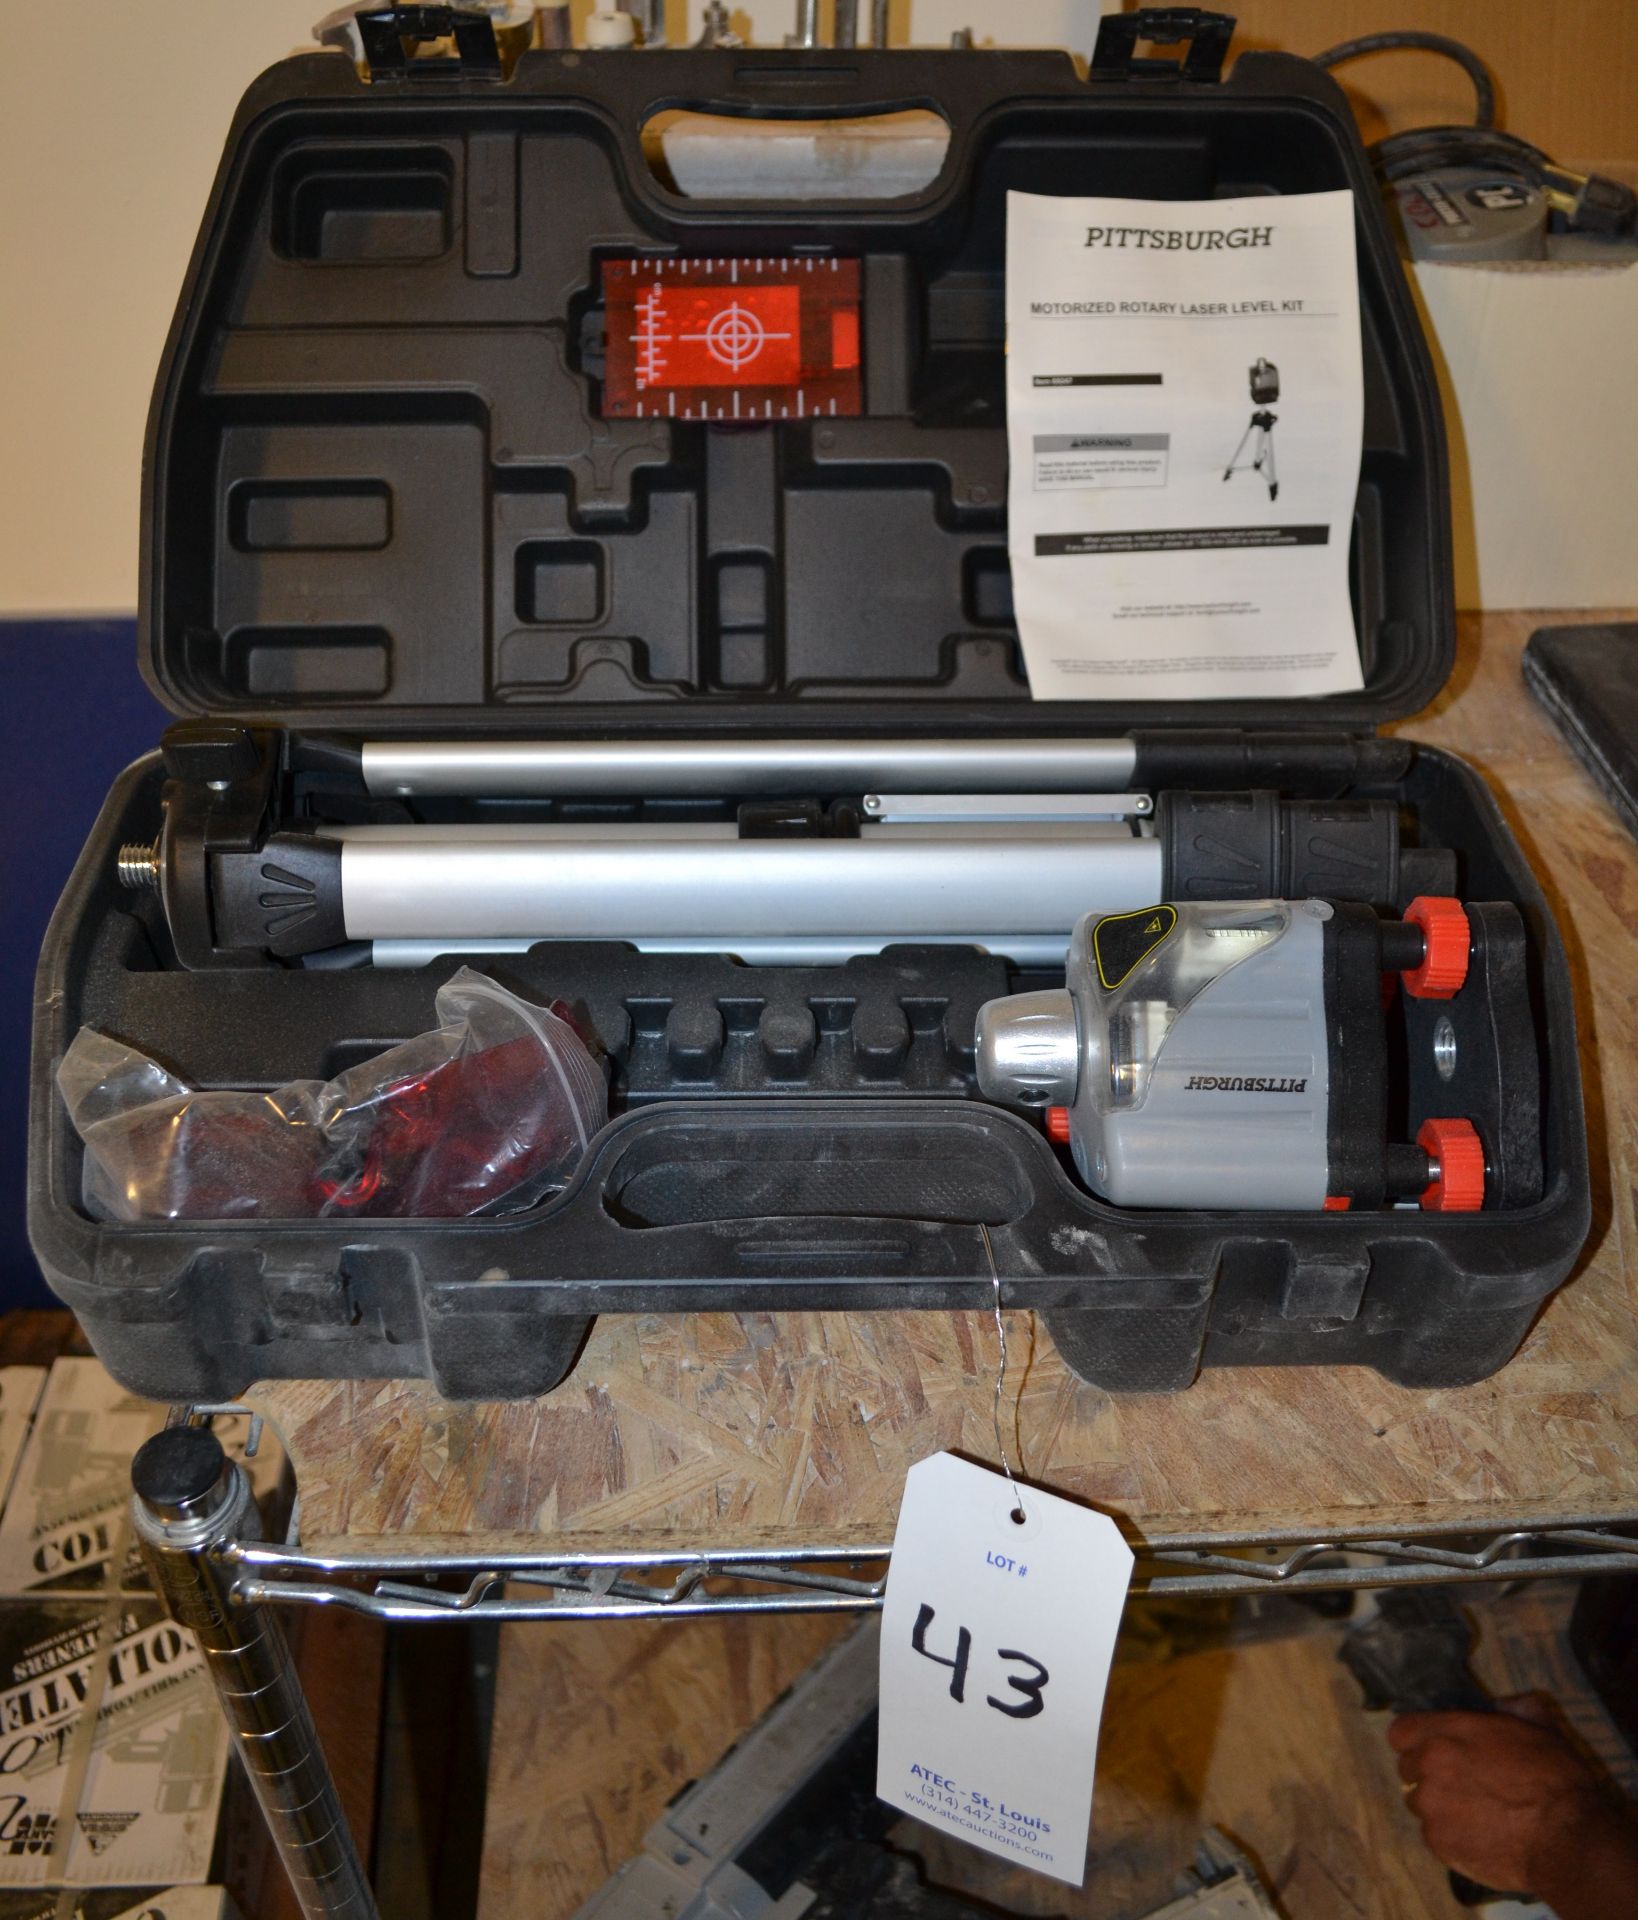 Pittsburgh Model 69247 Motorized Rotary Laser Level Kit